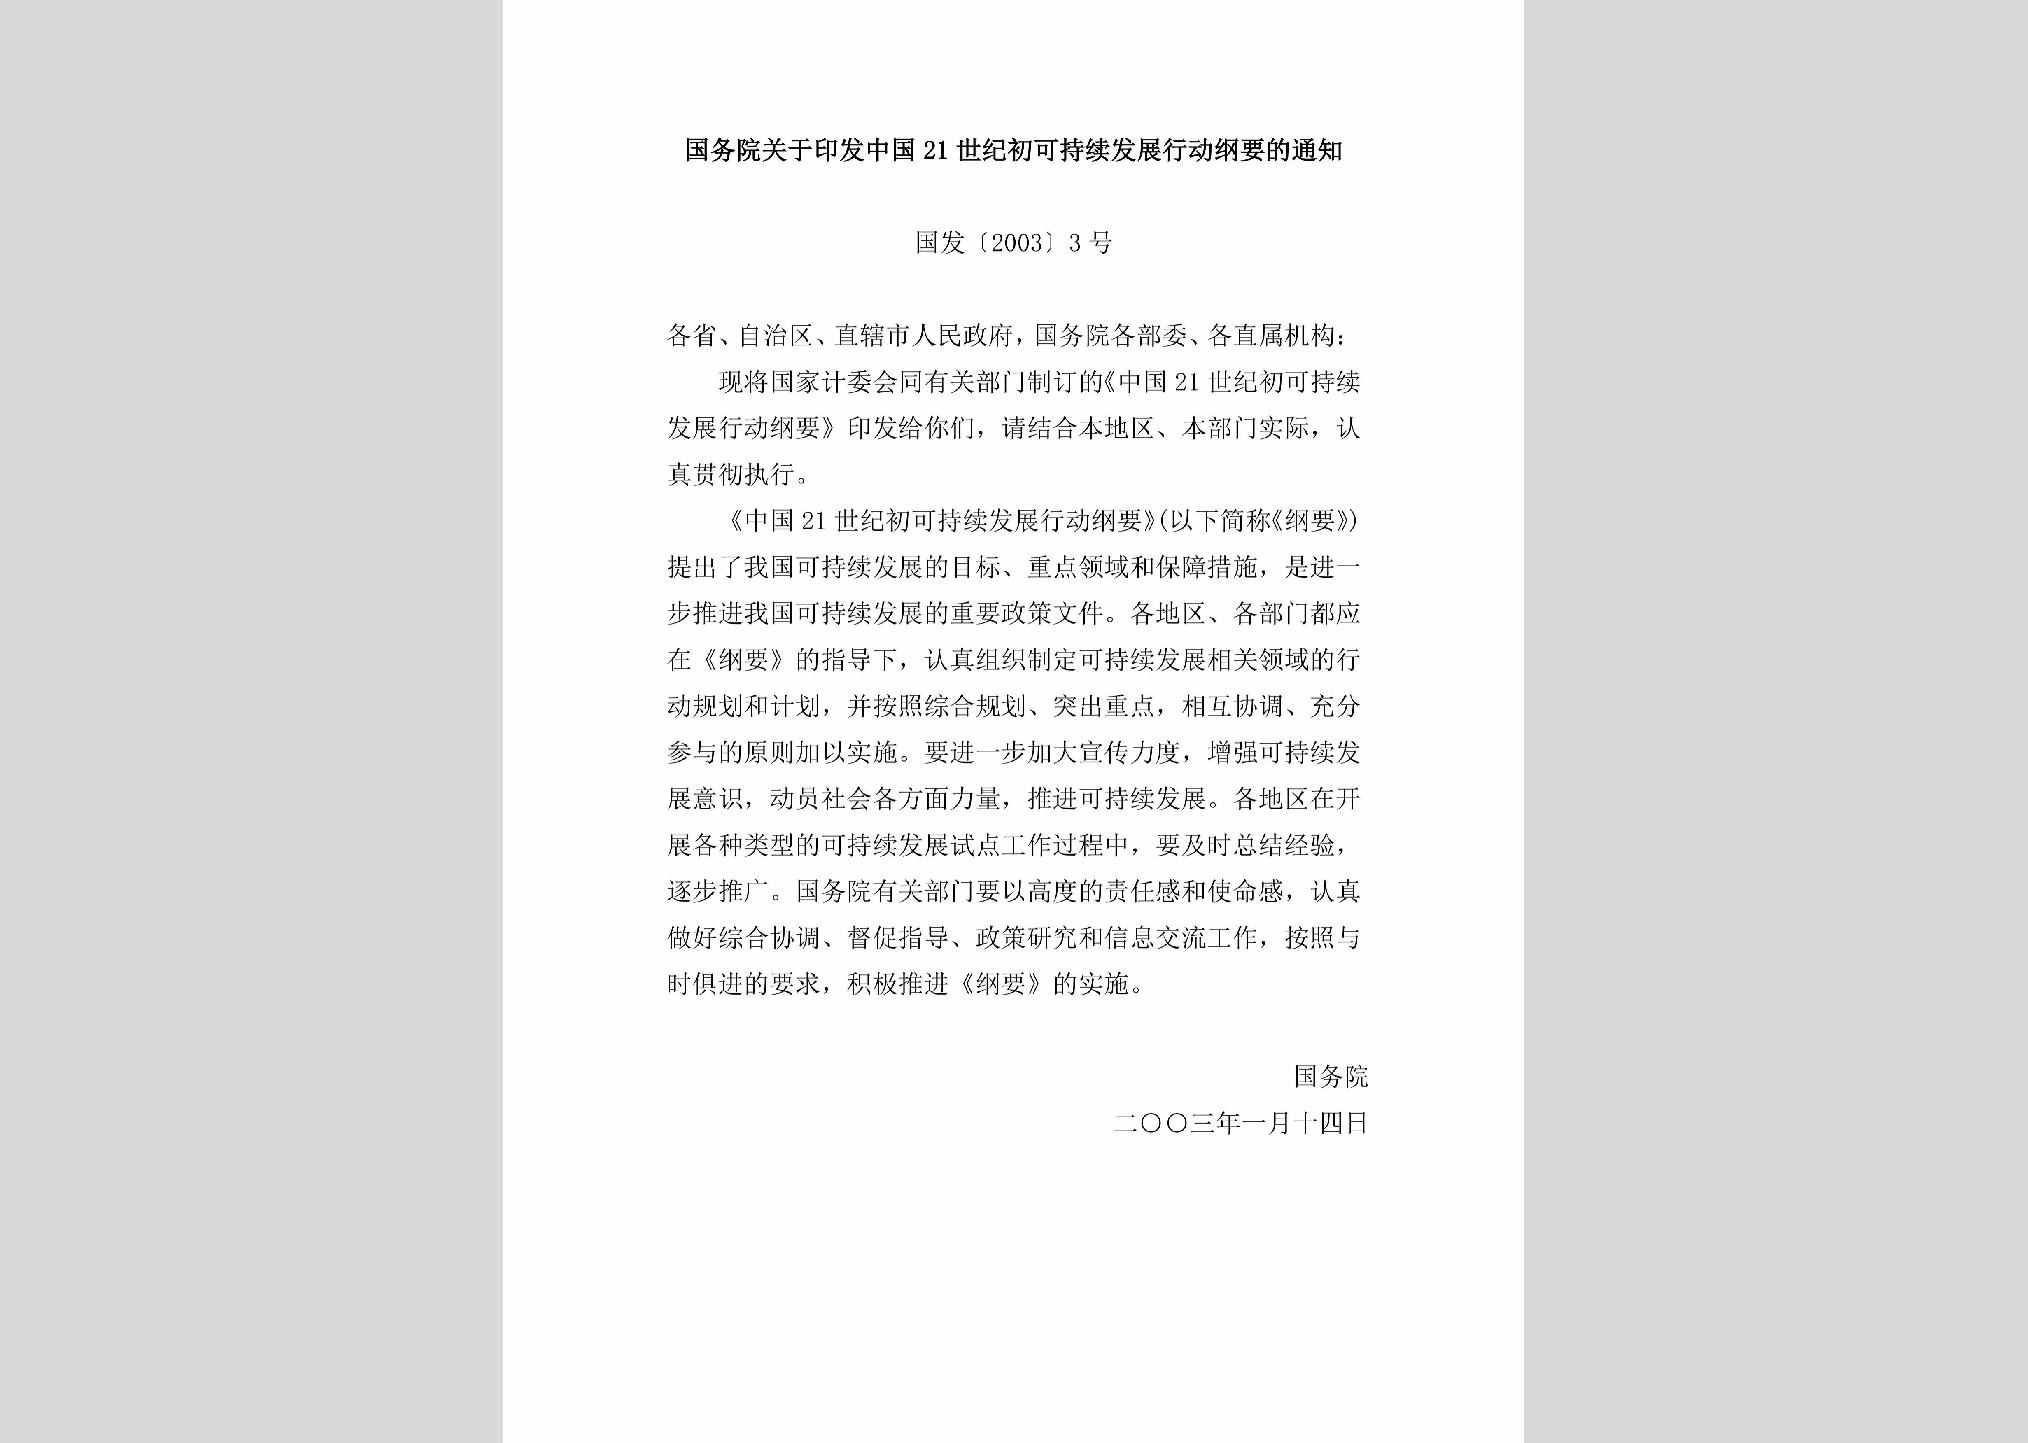 国发[2003]3号：国务院关于印发中国21世纪初可持续发展行动纲要的通知